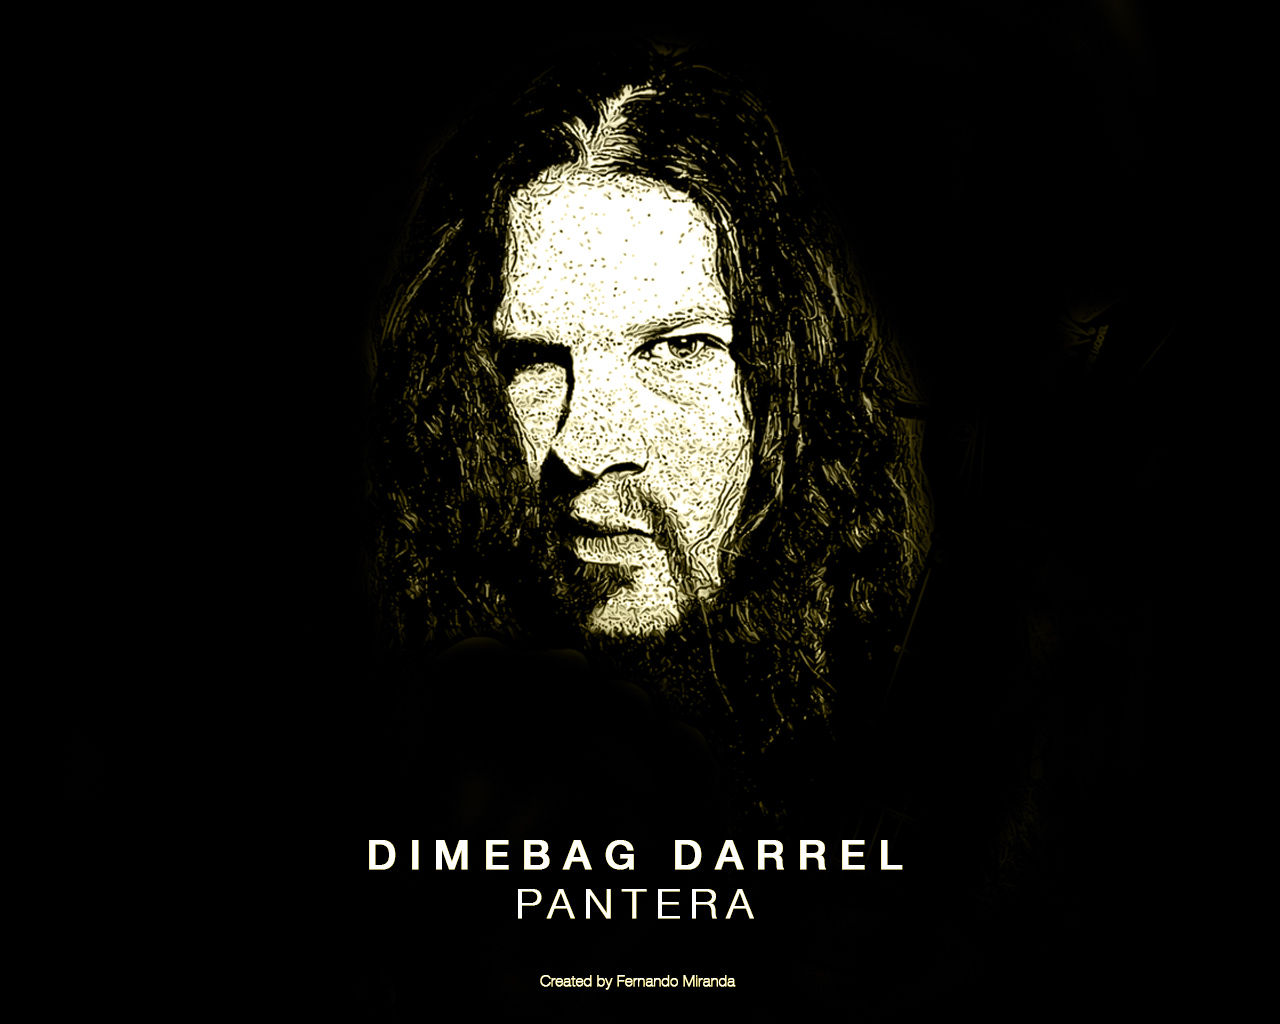 Dimebag Darrel Pantera Bandswallpaper Wallpaper Music